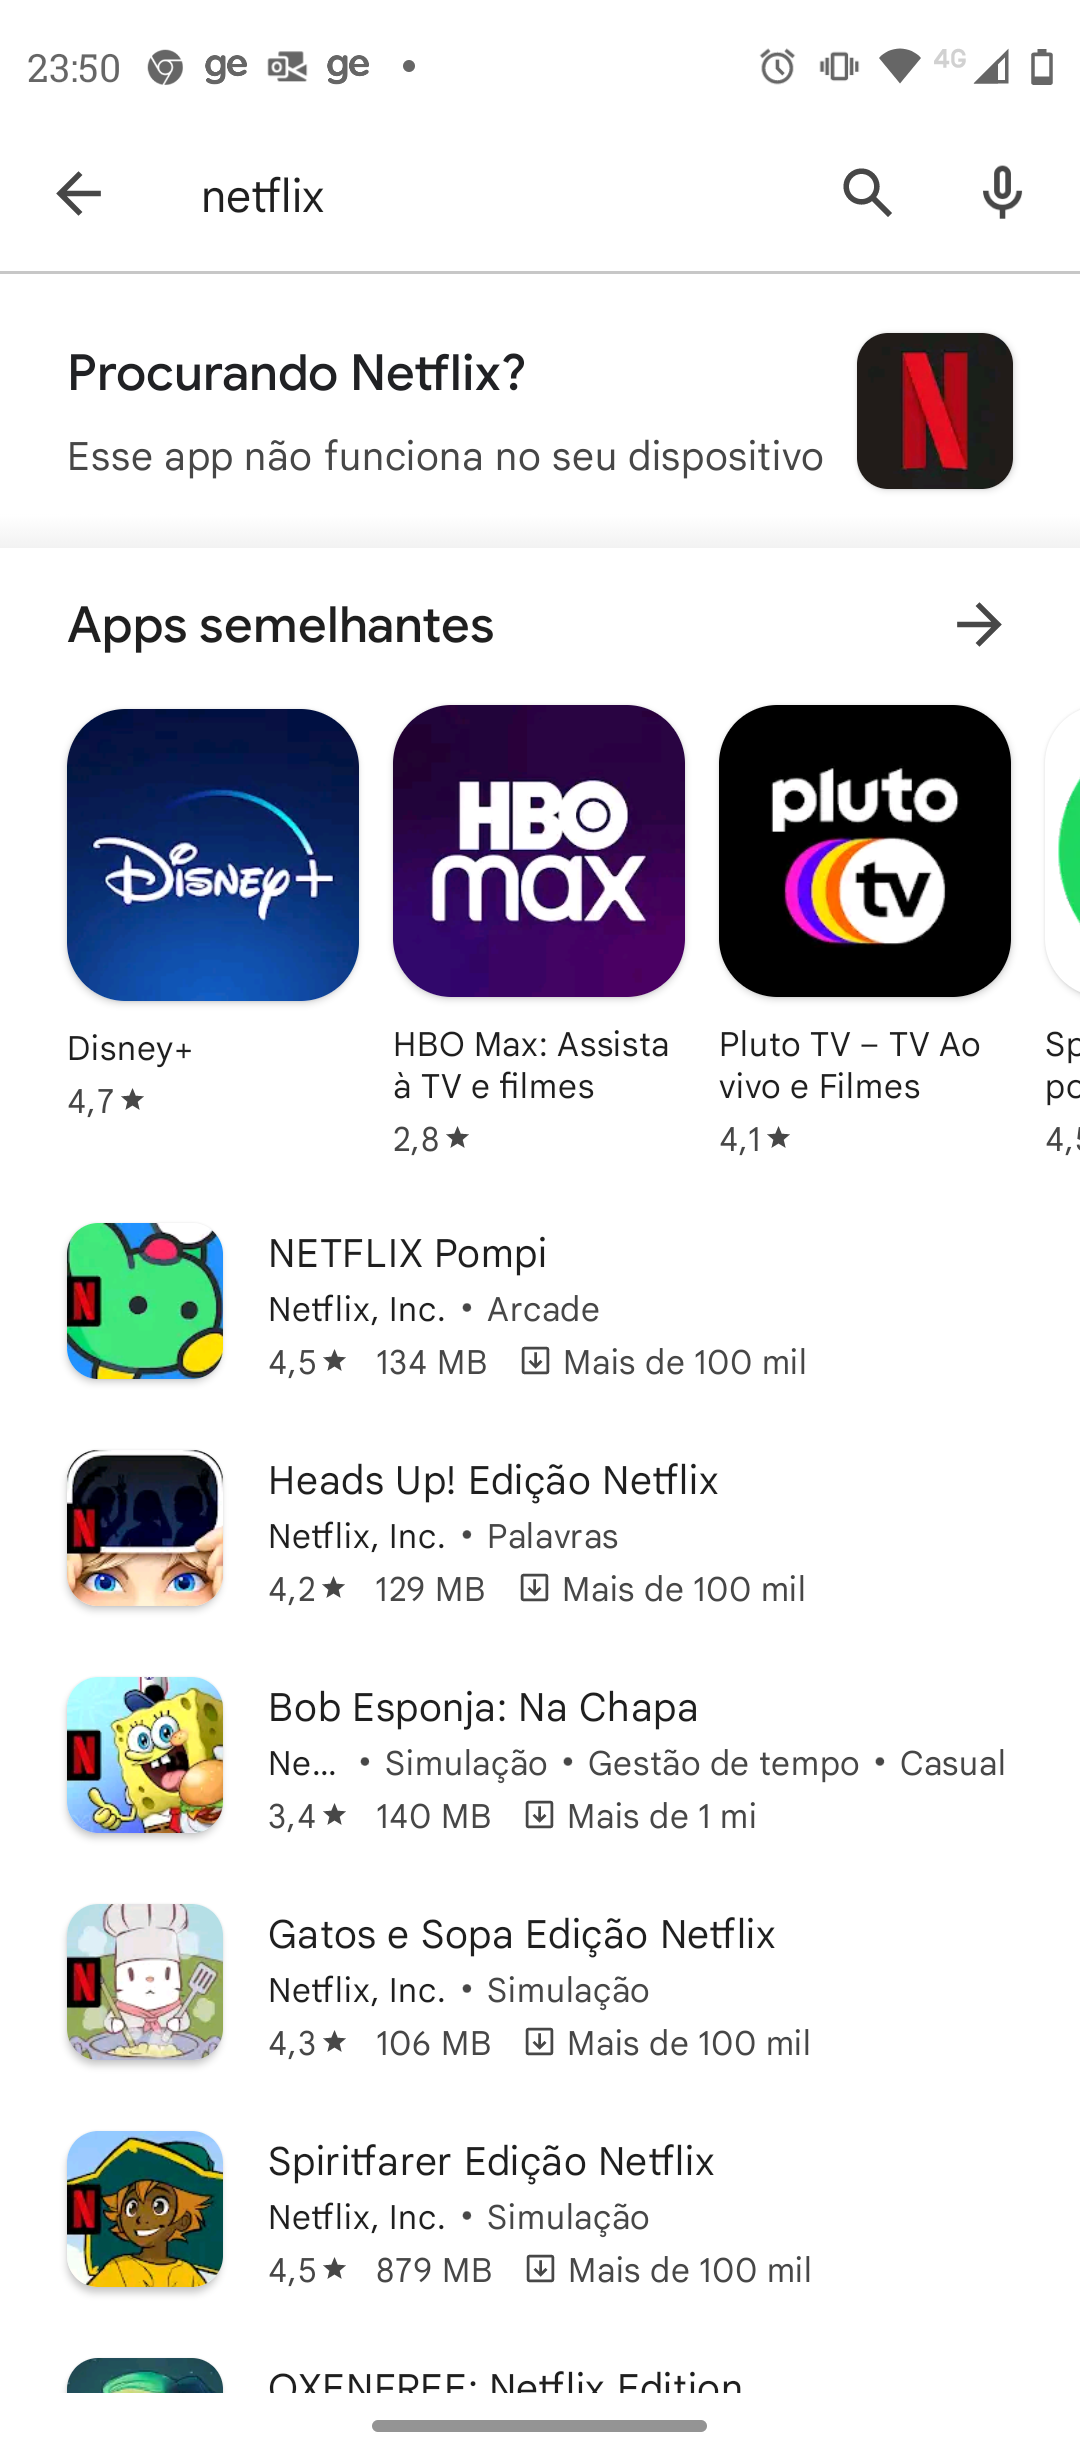 Bob Esponja: Na Chapa na App Store